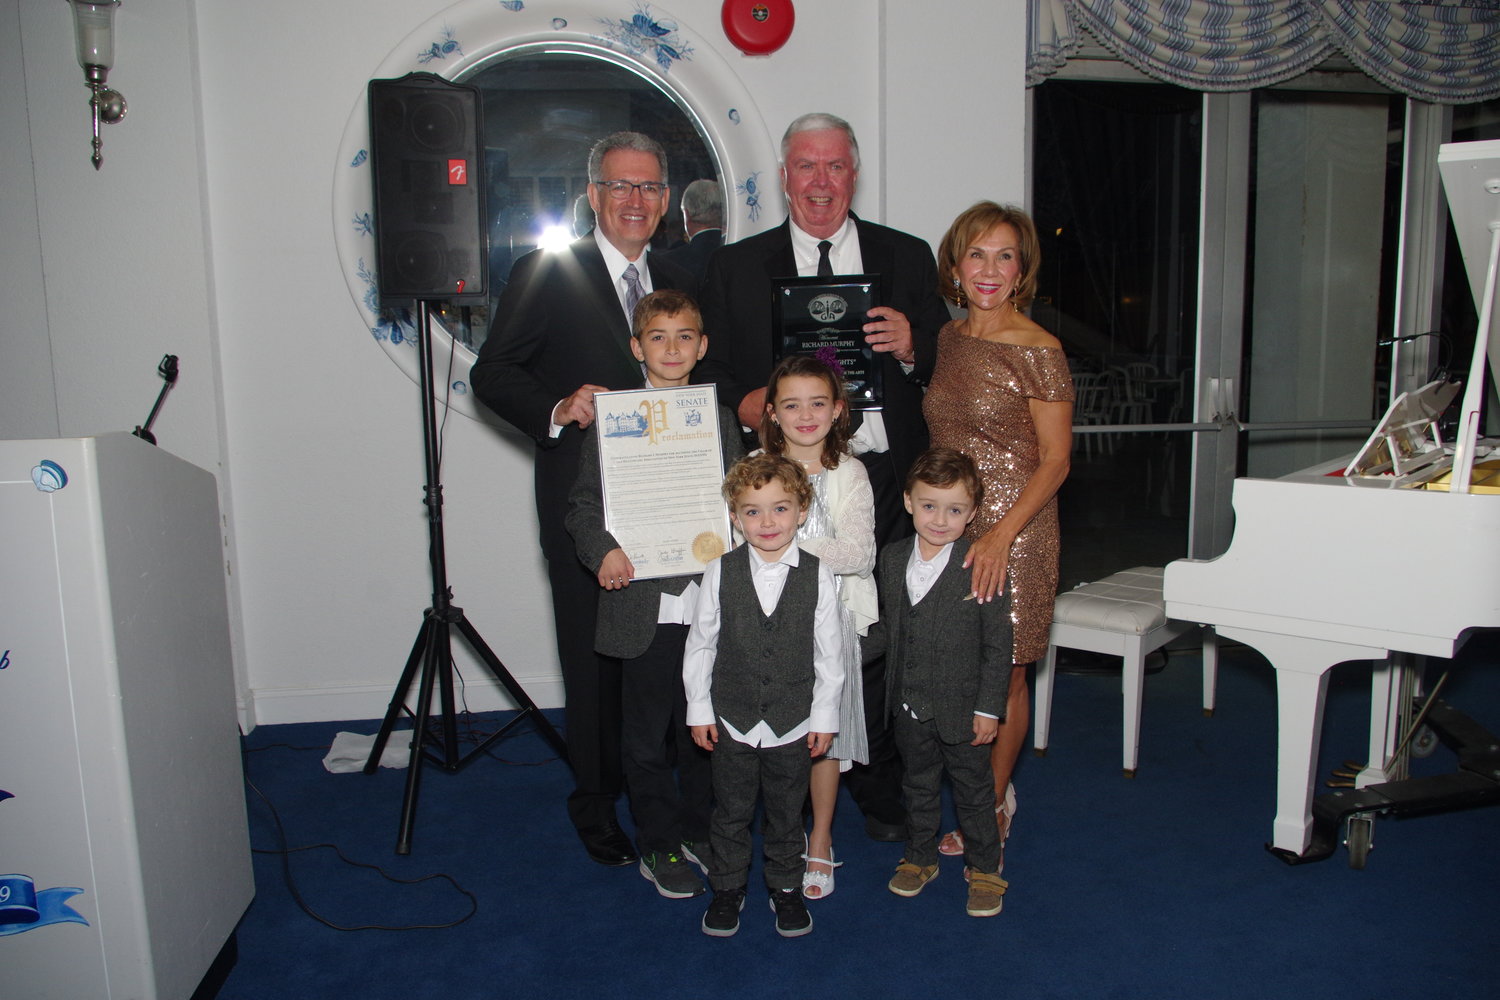 Gala Co-Chair Wayne Lipton; Co-Honoree Mount Sinai South Nassau President & CEO Rich Murphy; Gala Co-Chair Joan MacNaughton, with Murphy's grandchildren.